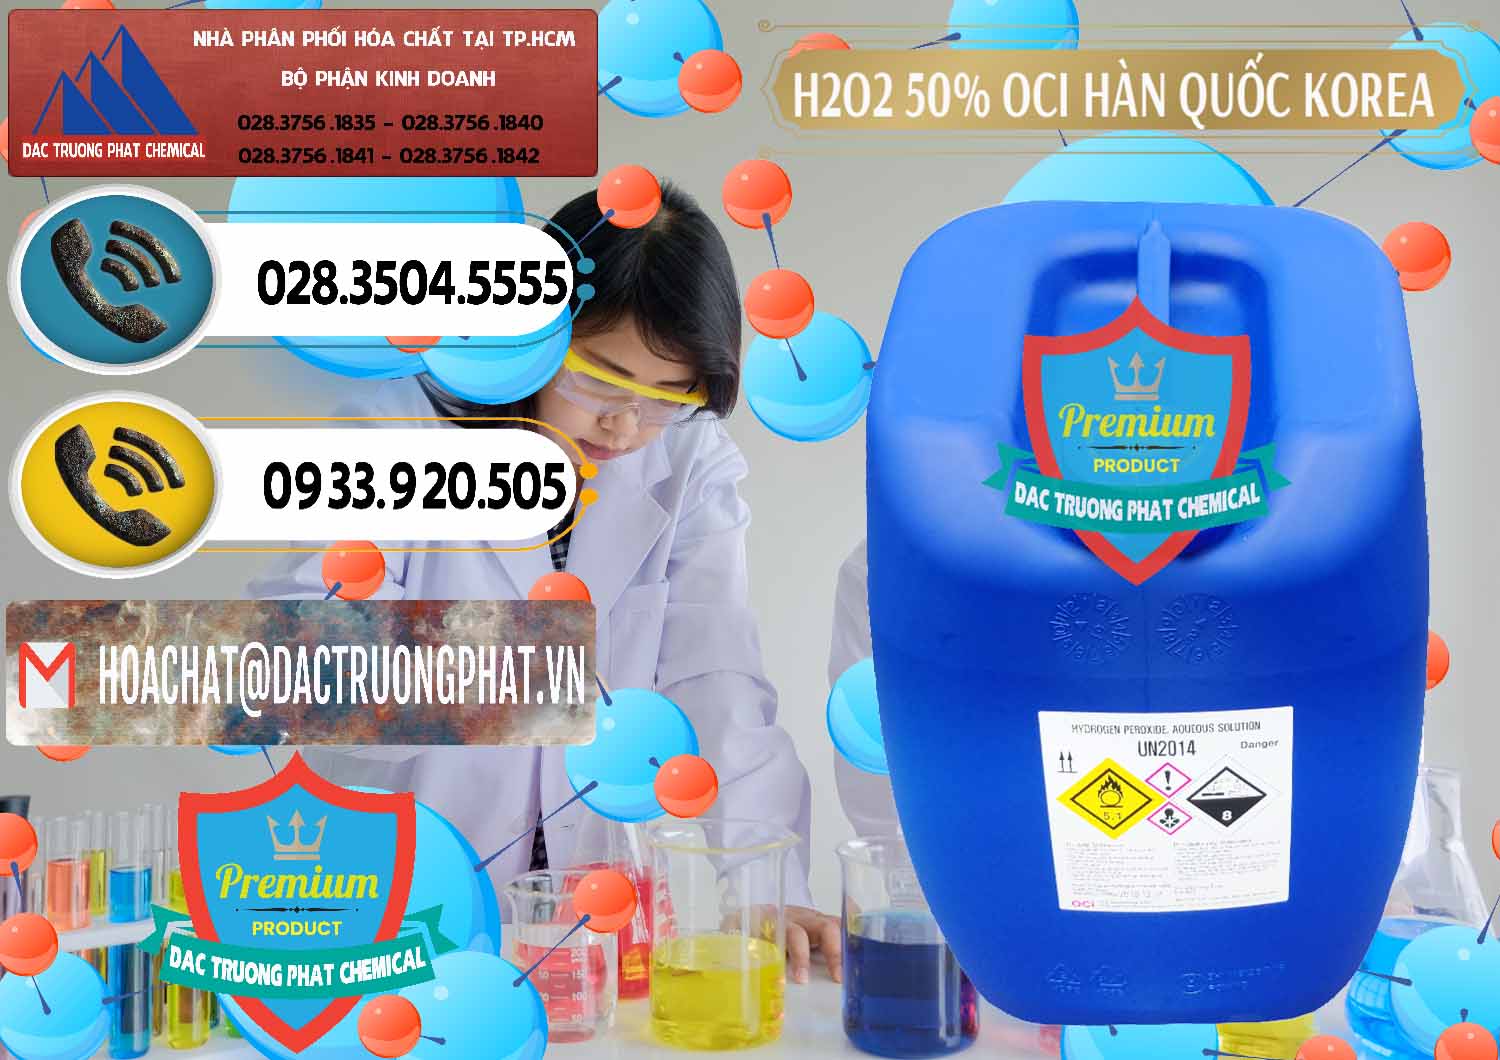 Cung cấp và bán H2O2 - Hydrogen Peroxide 50% OCI Hàn Quốc Korea - 0075 - Nơi cung cấp _ phân phối hóa chất tại TP.HCM - hoachatdetnhuom.vn